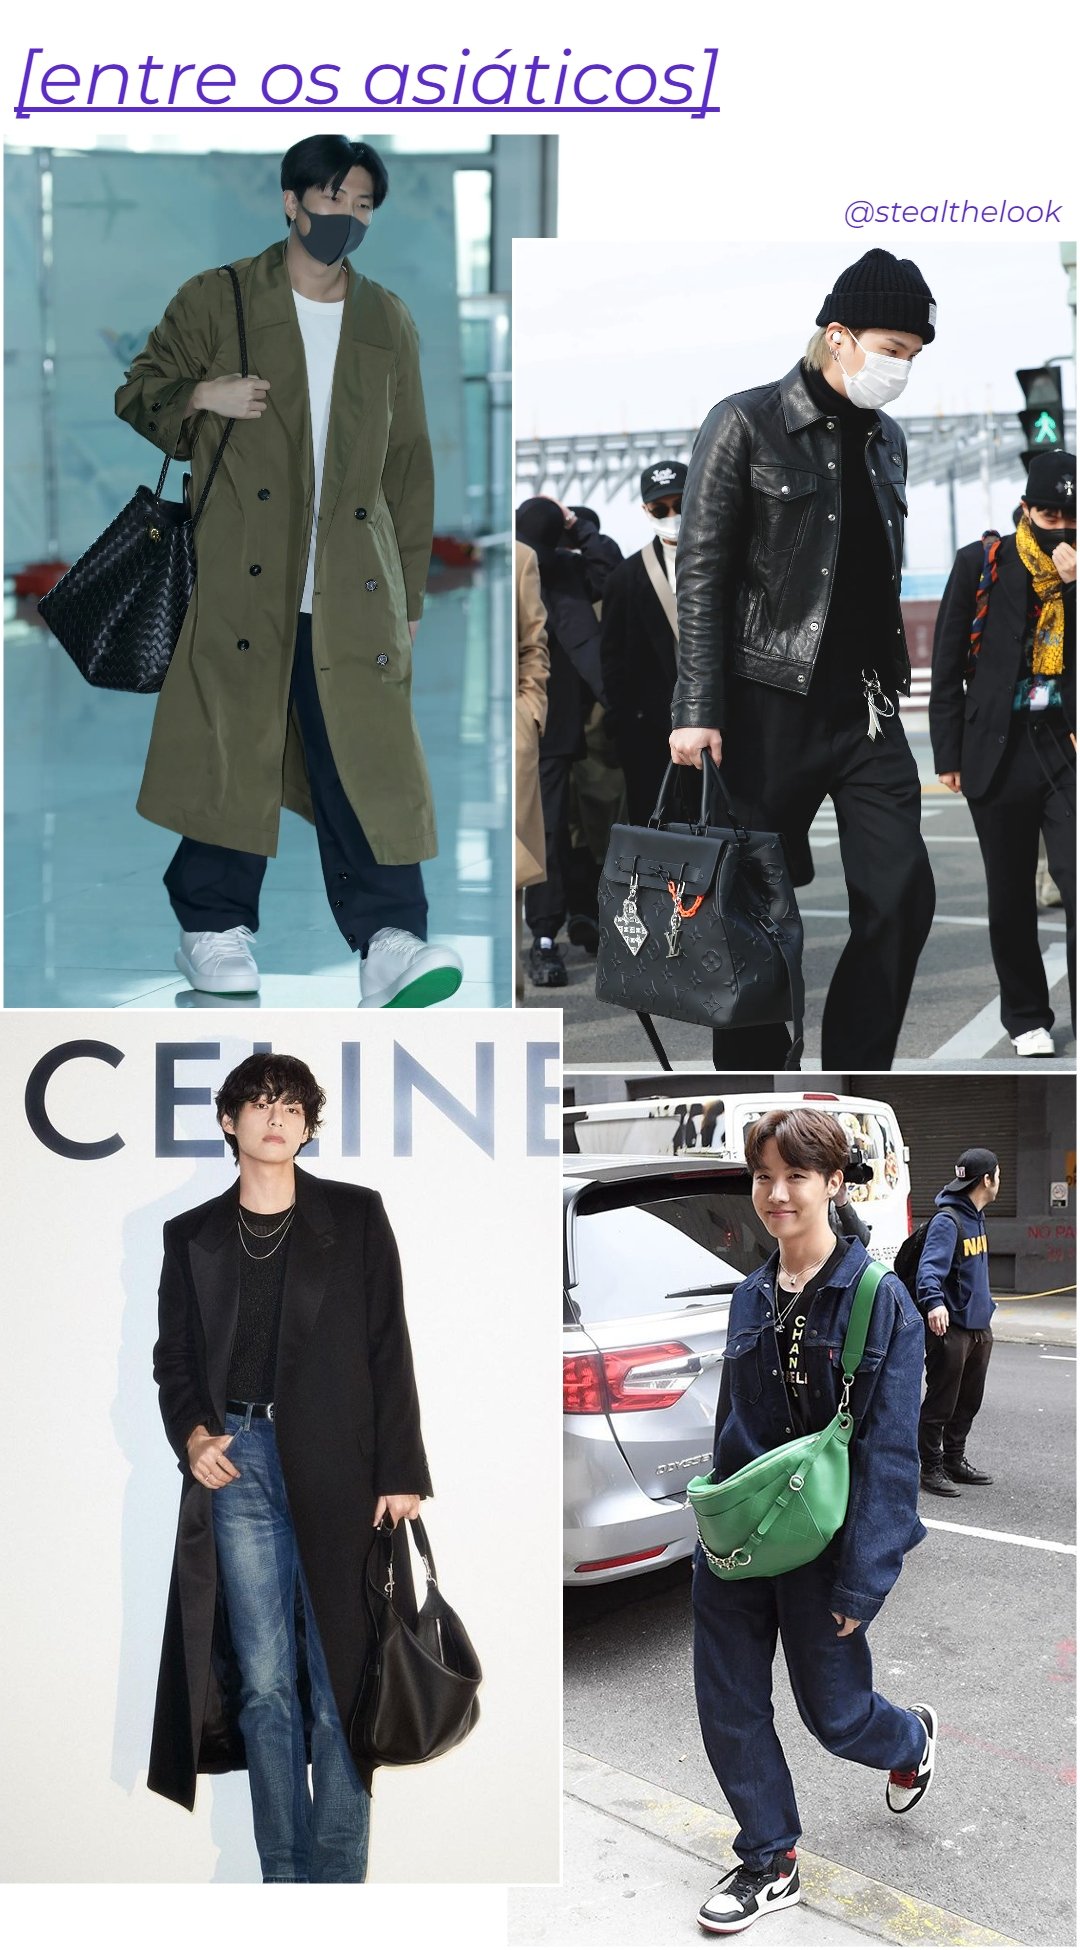 Asiáticos - roupas diversas - homens usando bolsas - inverno - colagem de imagens - https://stealthelook.com.br